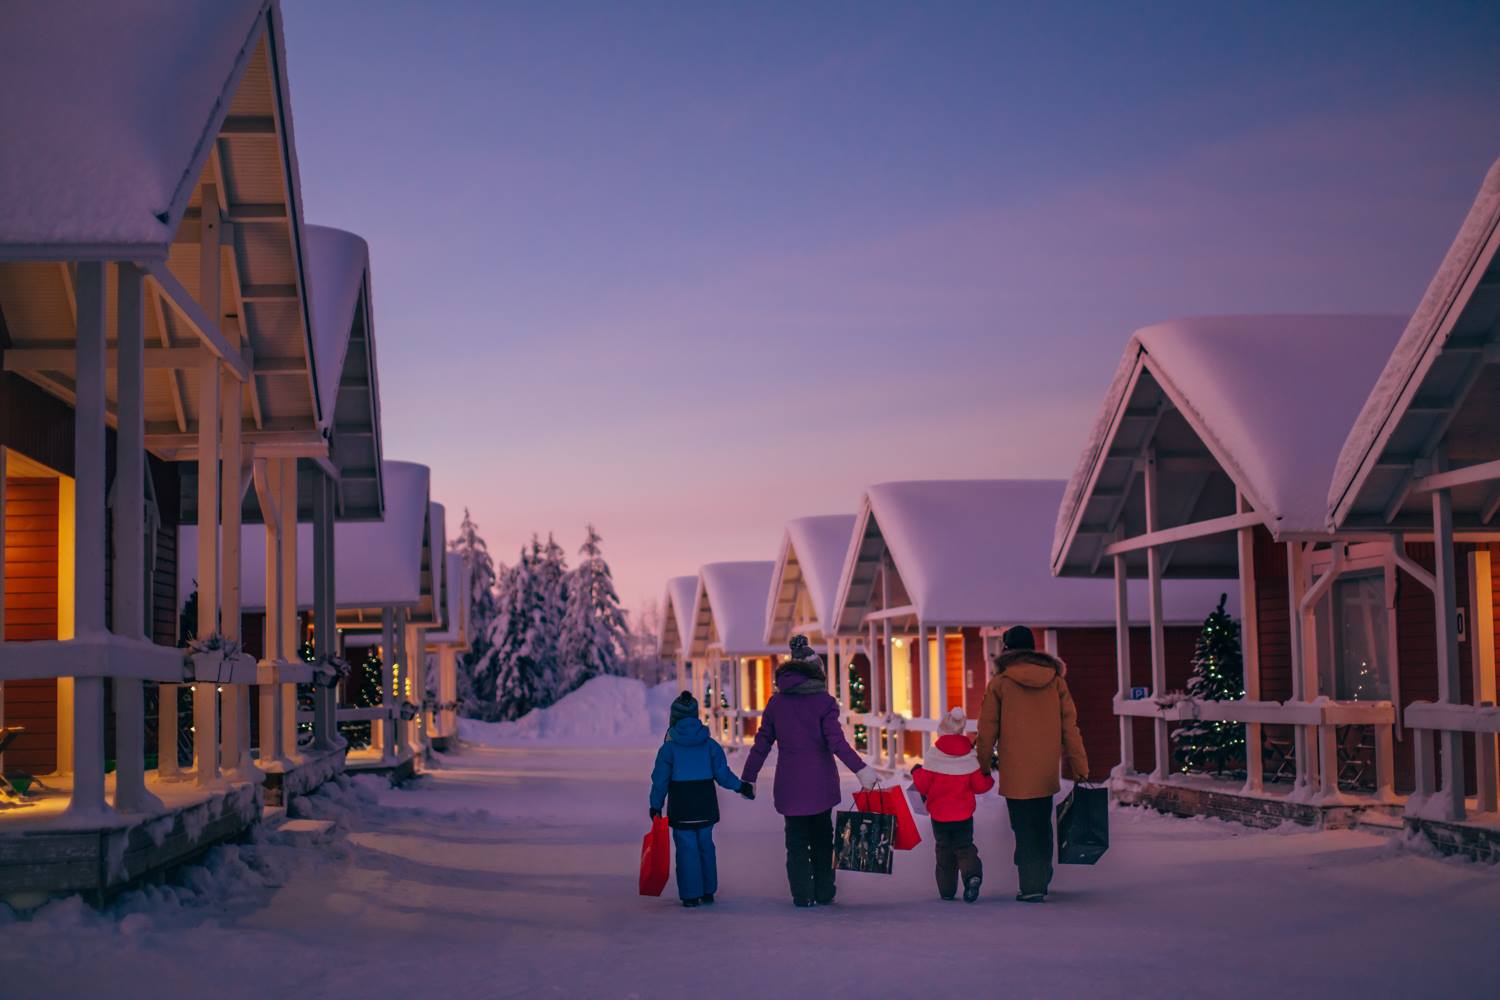 Polo Nord Villaggio Di Babbo Natale.Citta E Luoghi Dove E Natale Tutto L Anno Aspettando Natale